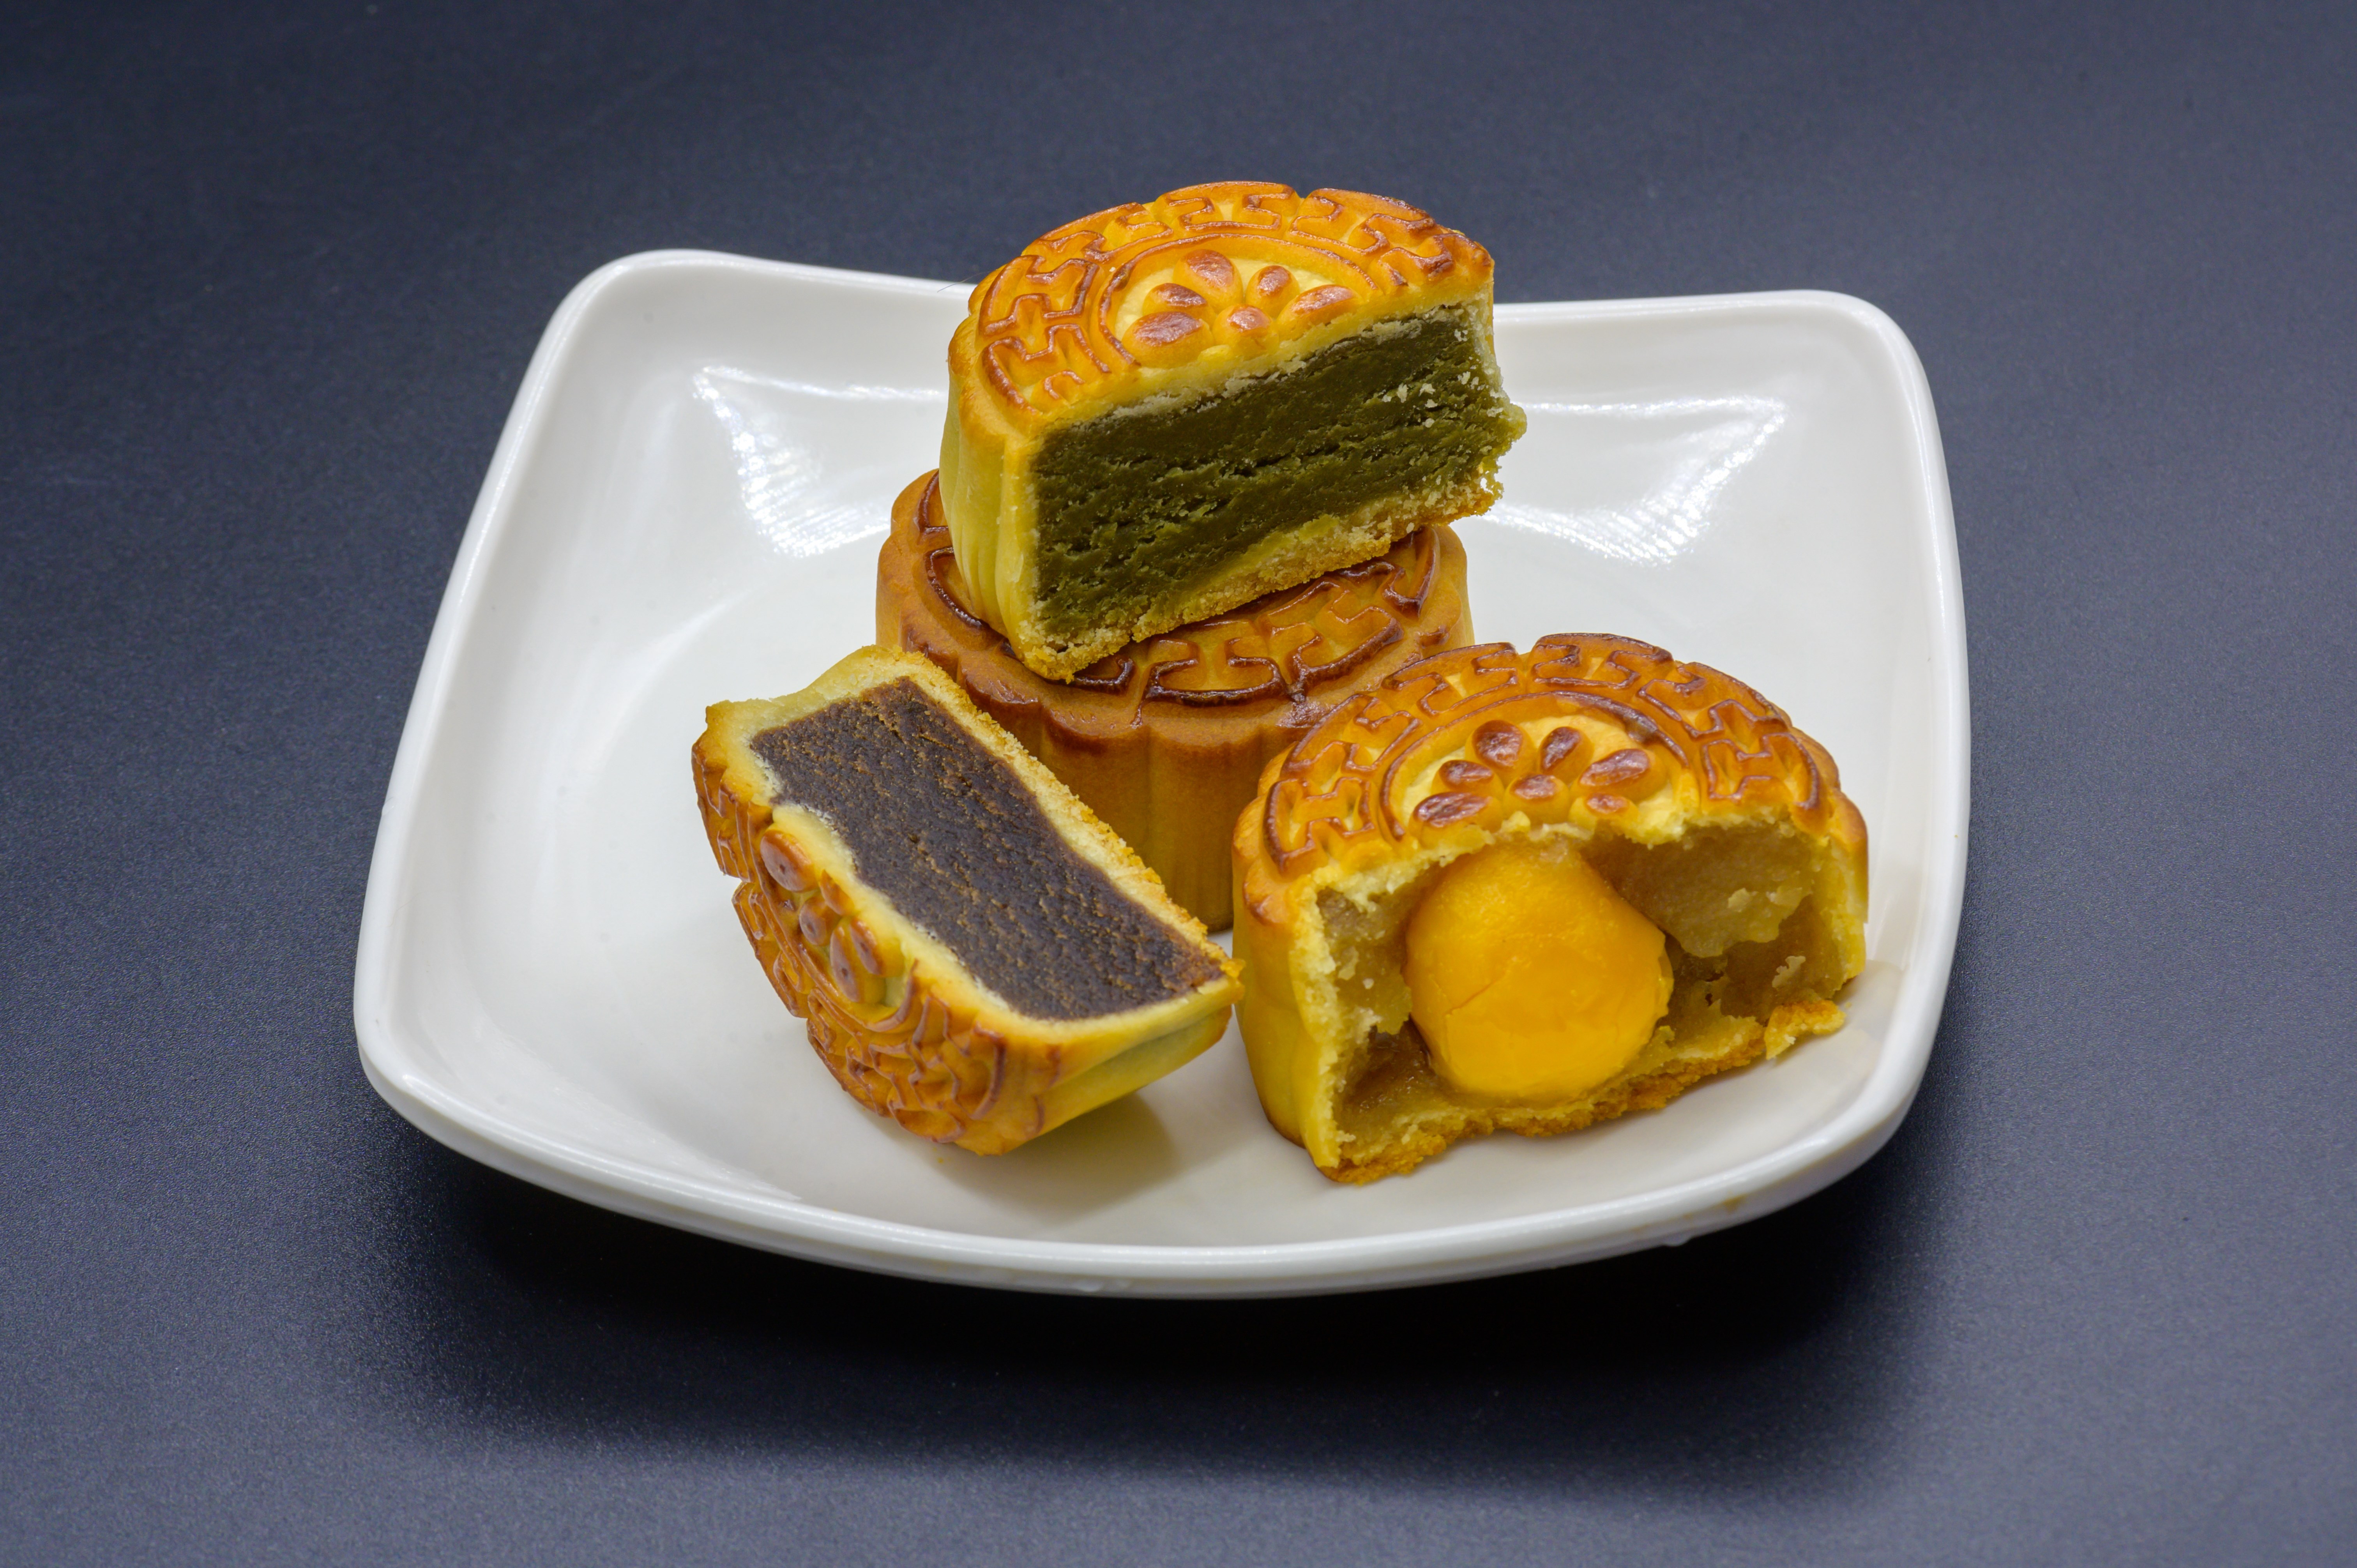 月饼 月团 小饼 丰收饼 团圆饼 甜的 面点 中式糕点 中式点心 中秋节